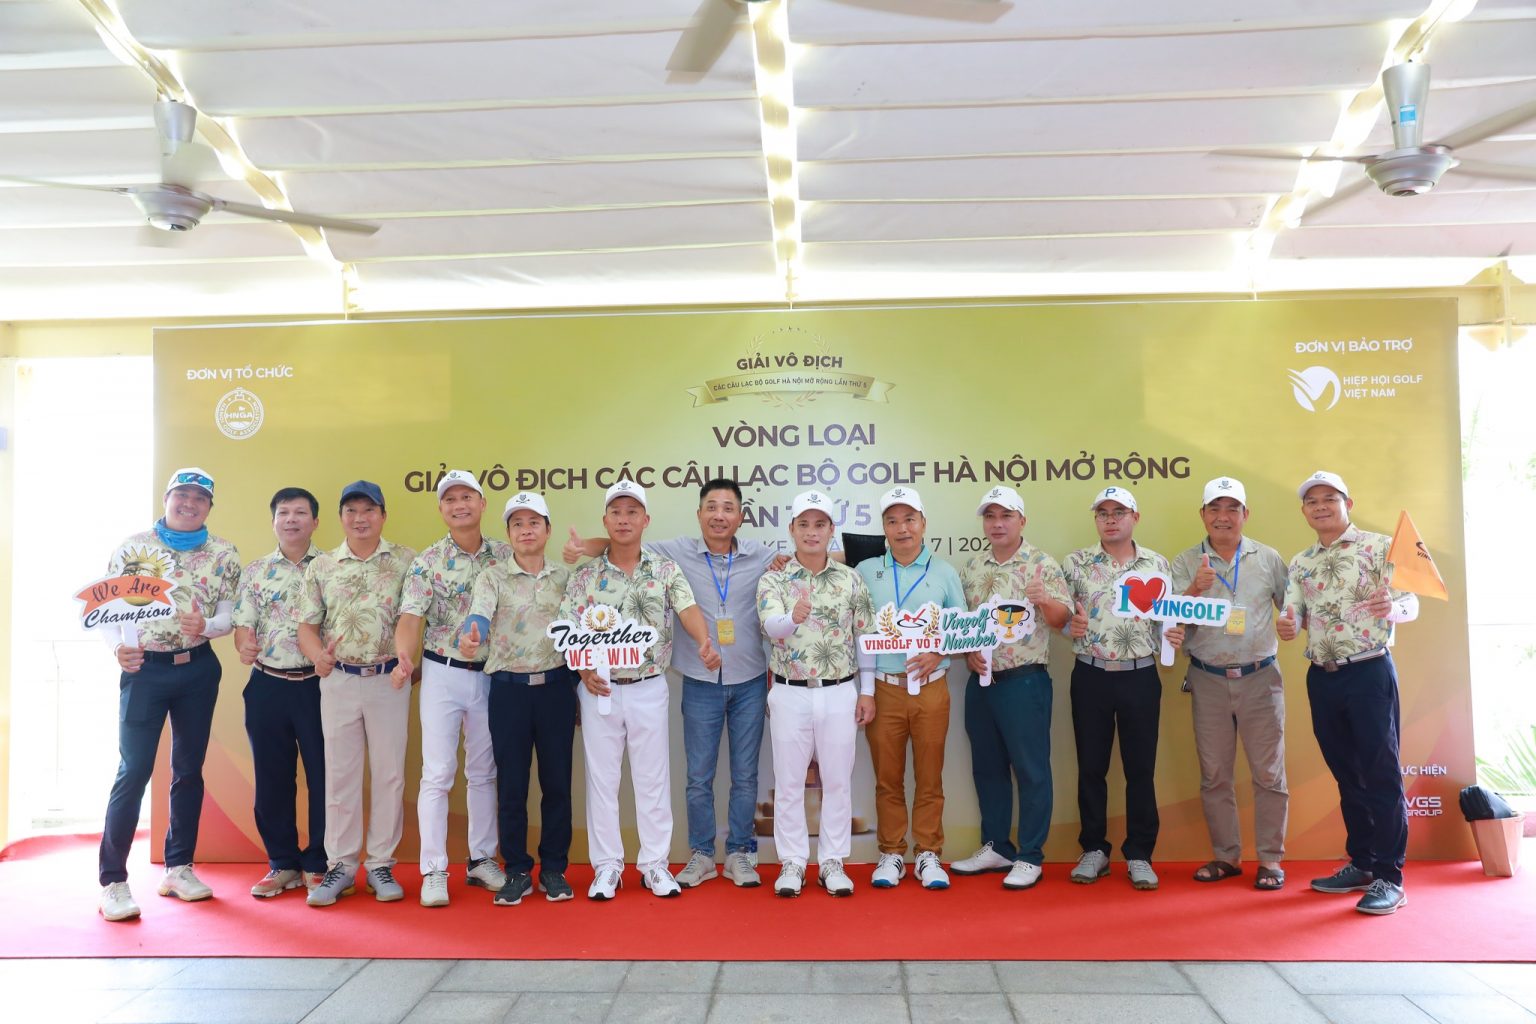 5 CLB đầu tiên đoạt vé vào VCK giải CLB Hà Nội Mở rộng 2022